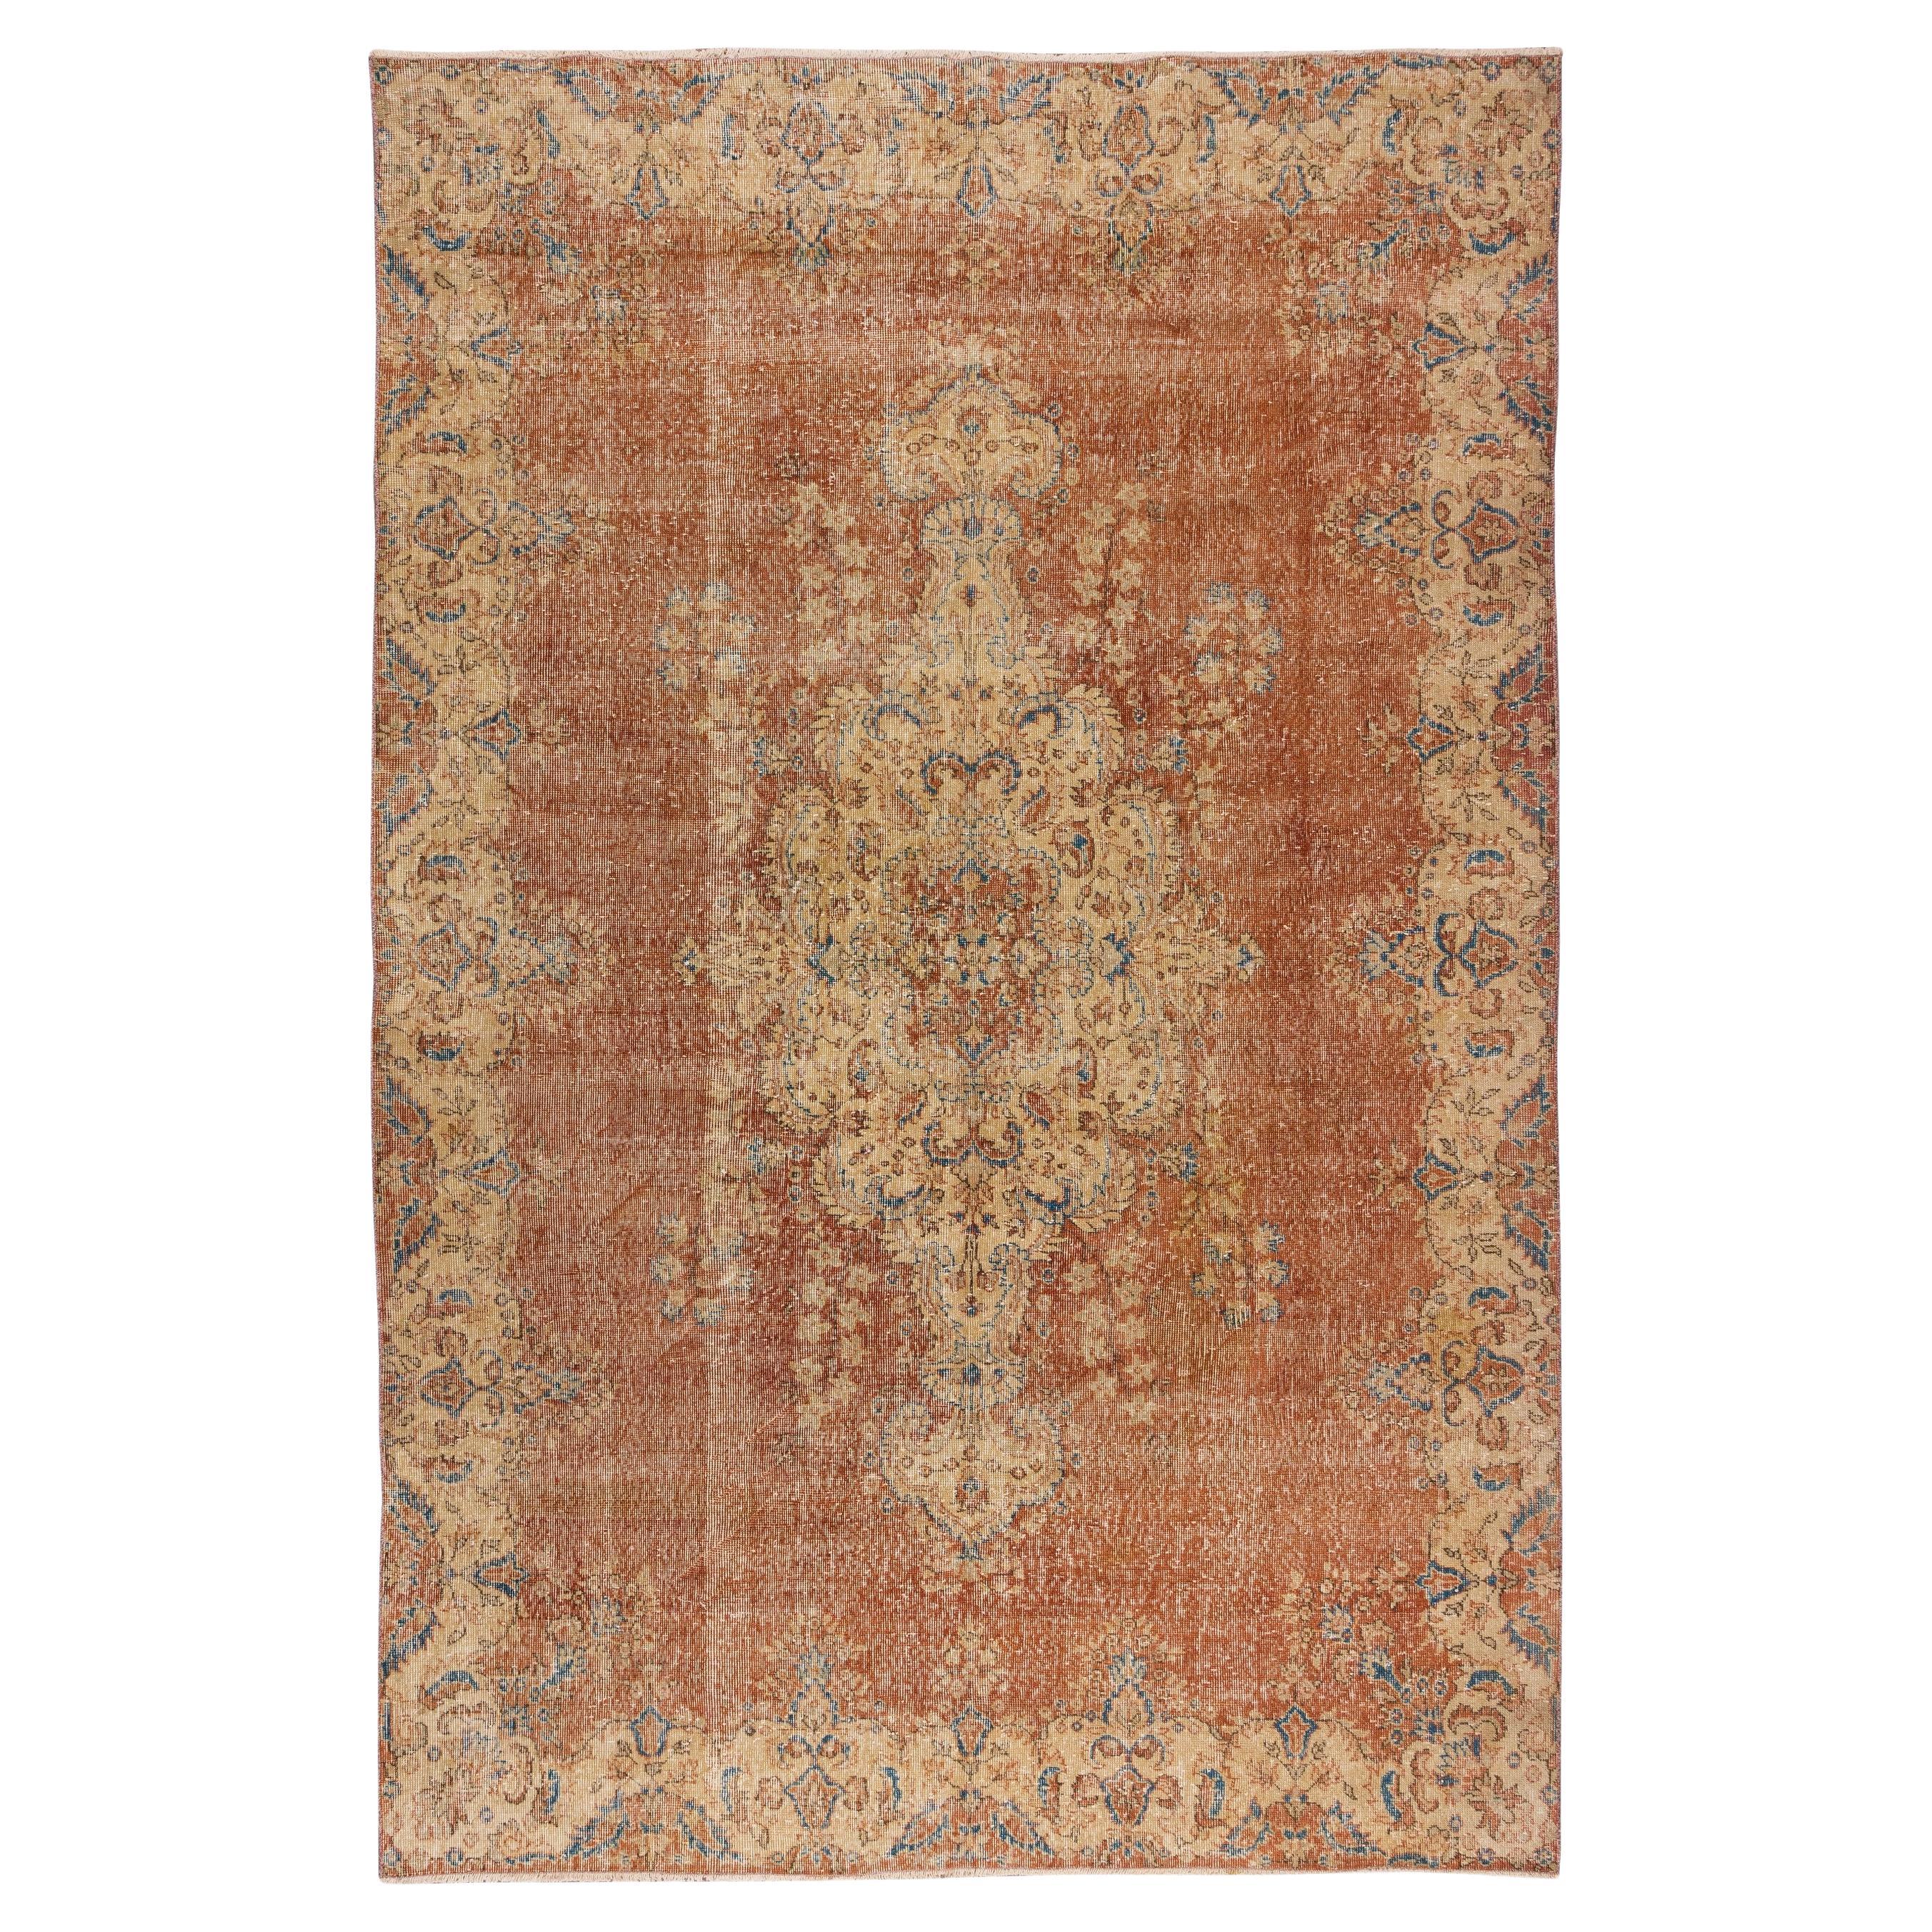 7x10,5 Ft Handgefertigter türkischer Vintage-Teppich mit Medaillon-Design, Bodenbezug